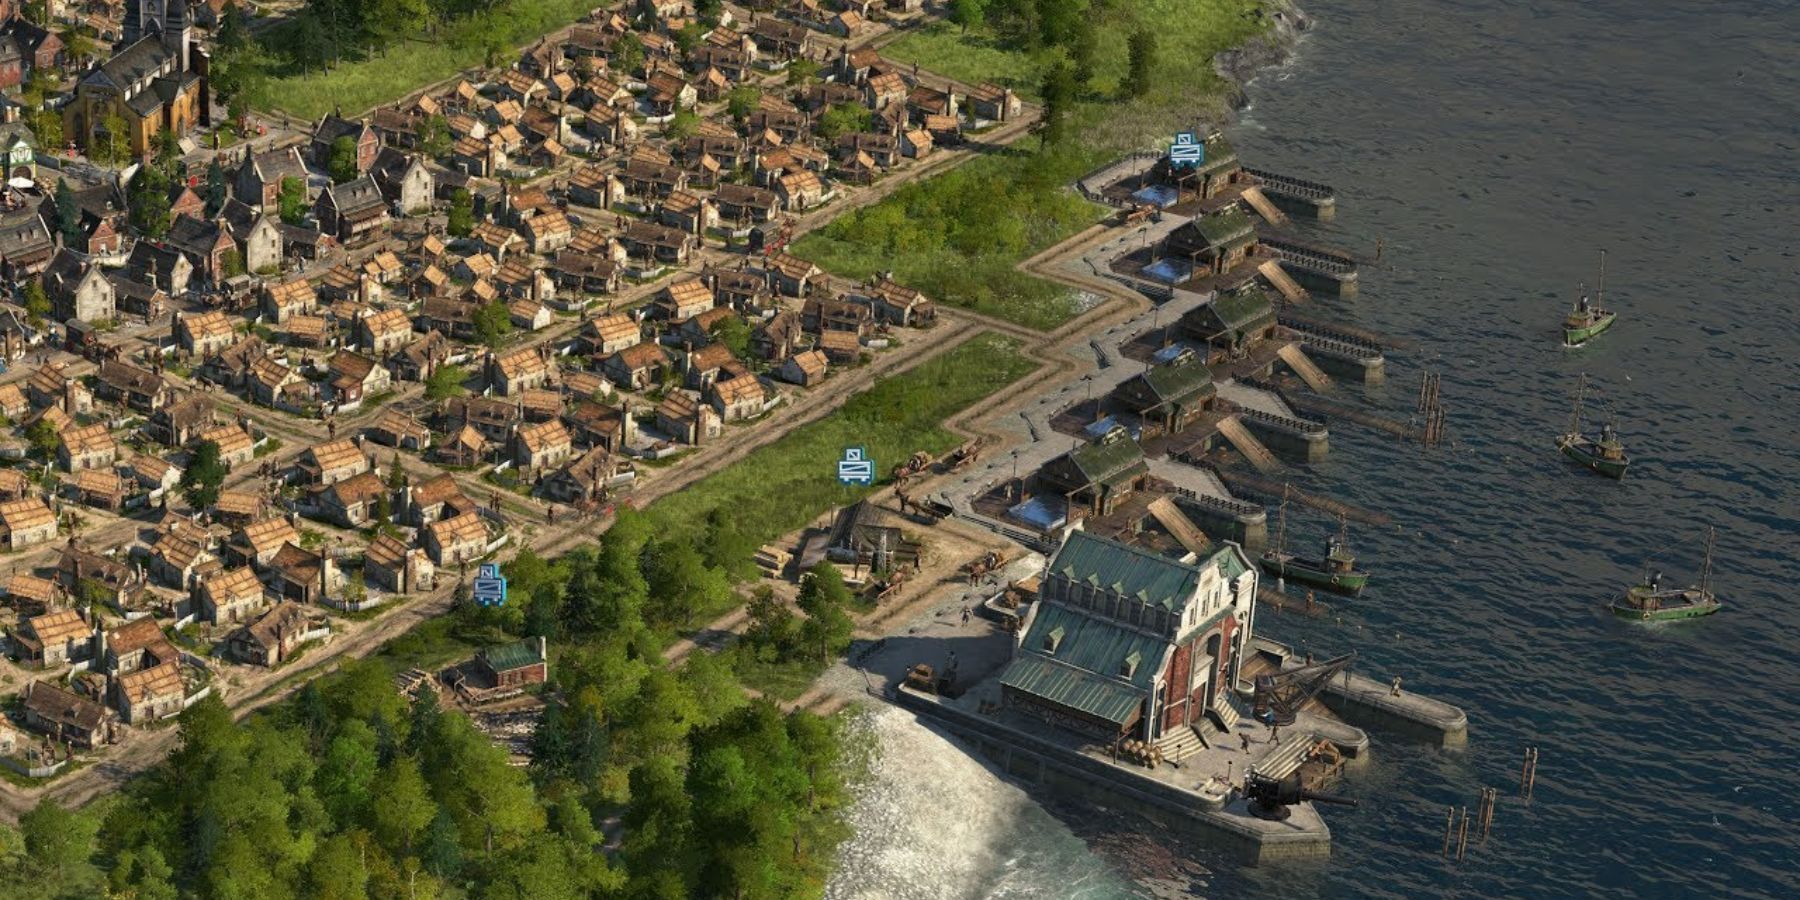 a coastal city in Anno 1800